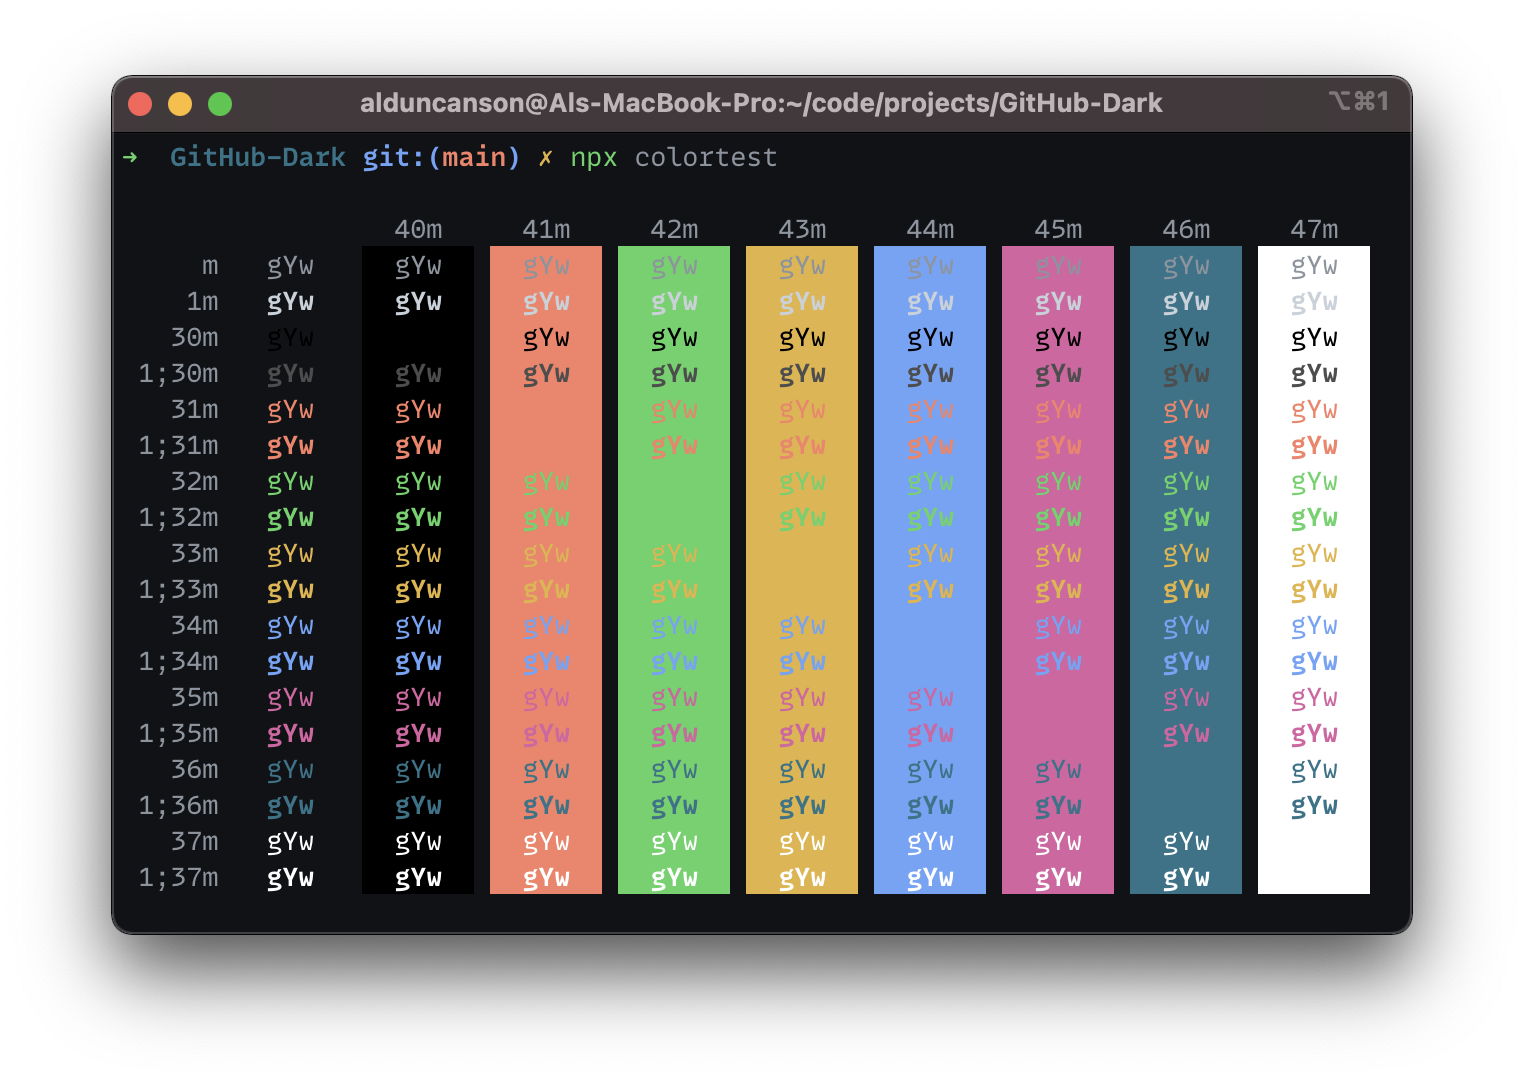 npx colortest output